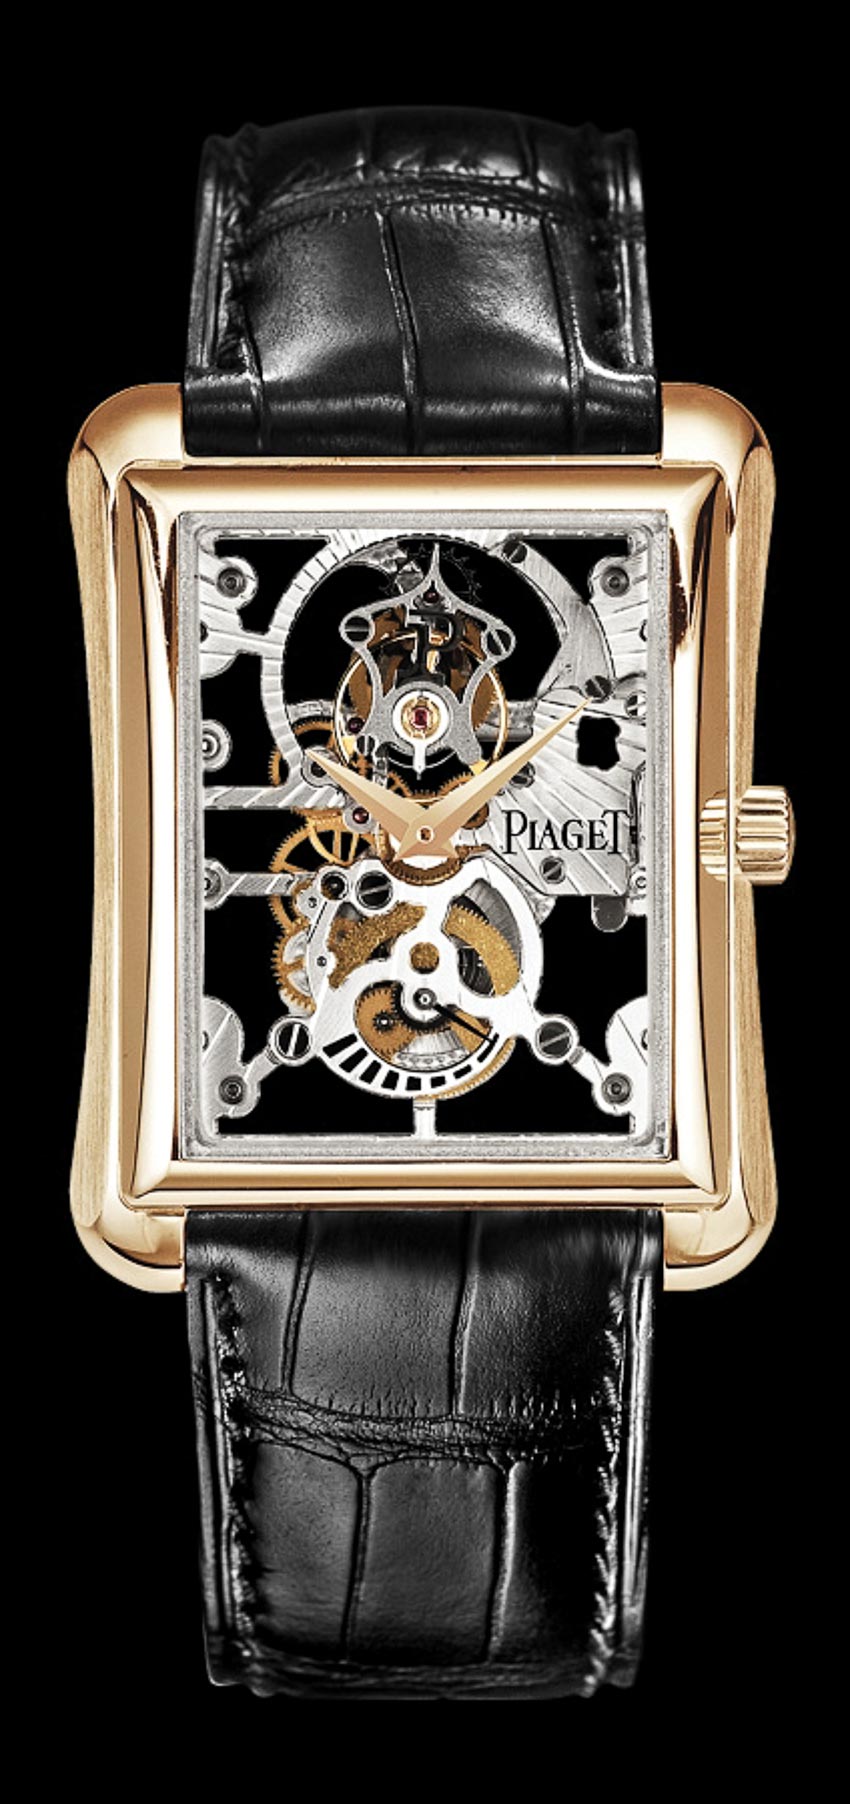 Piaget giới thiệu 6 tuyệt phẩm đồng hồ tại Việt Nam